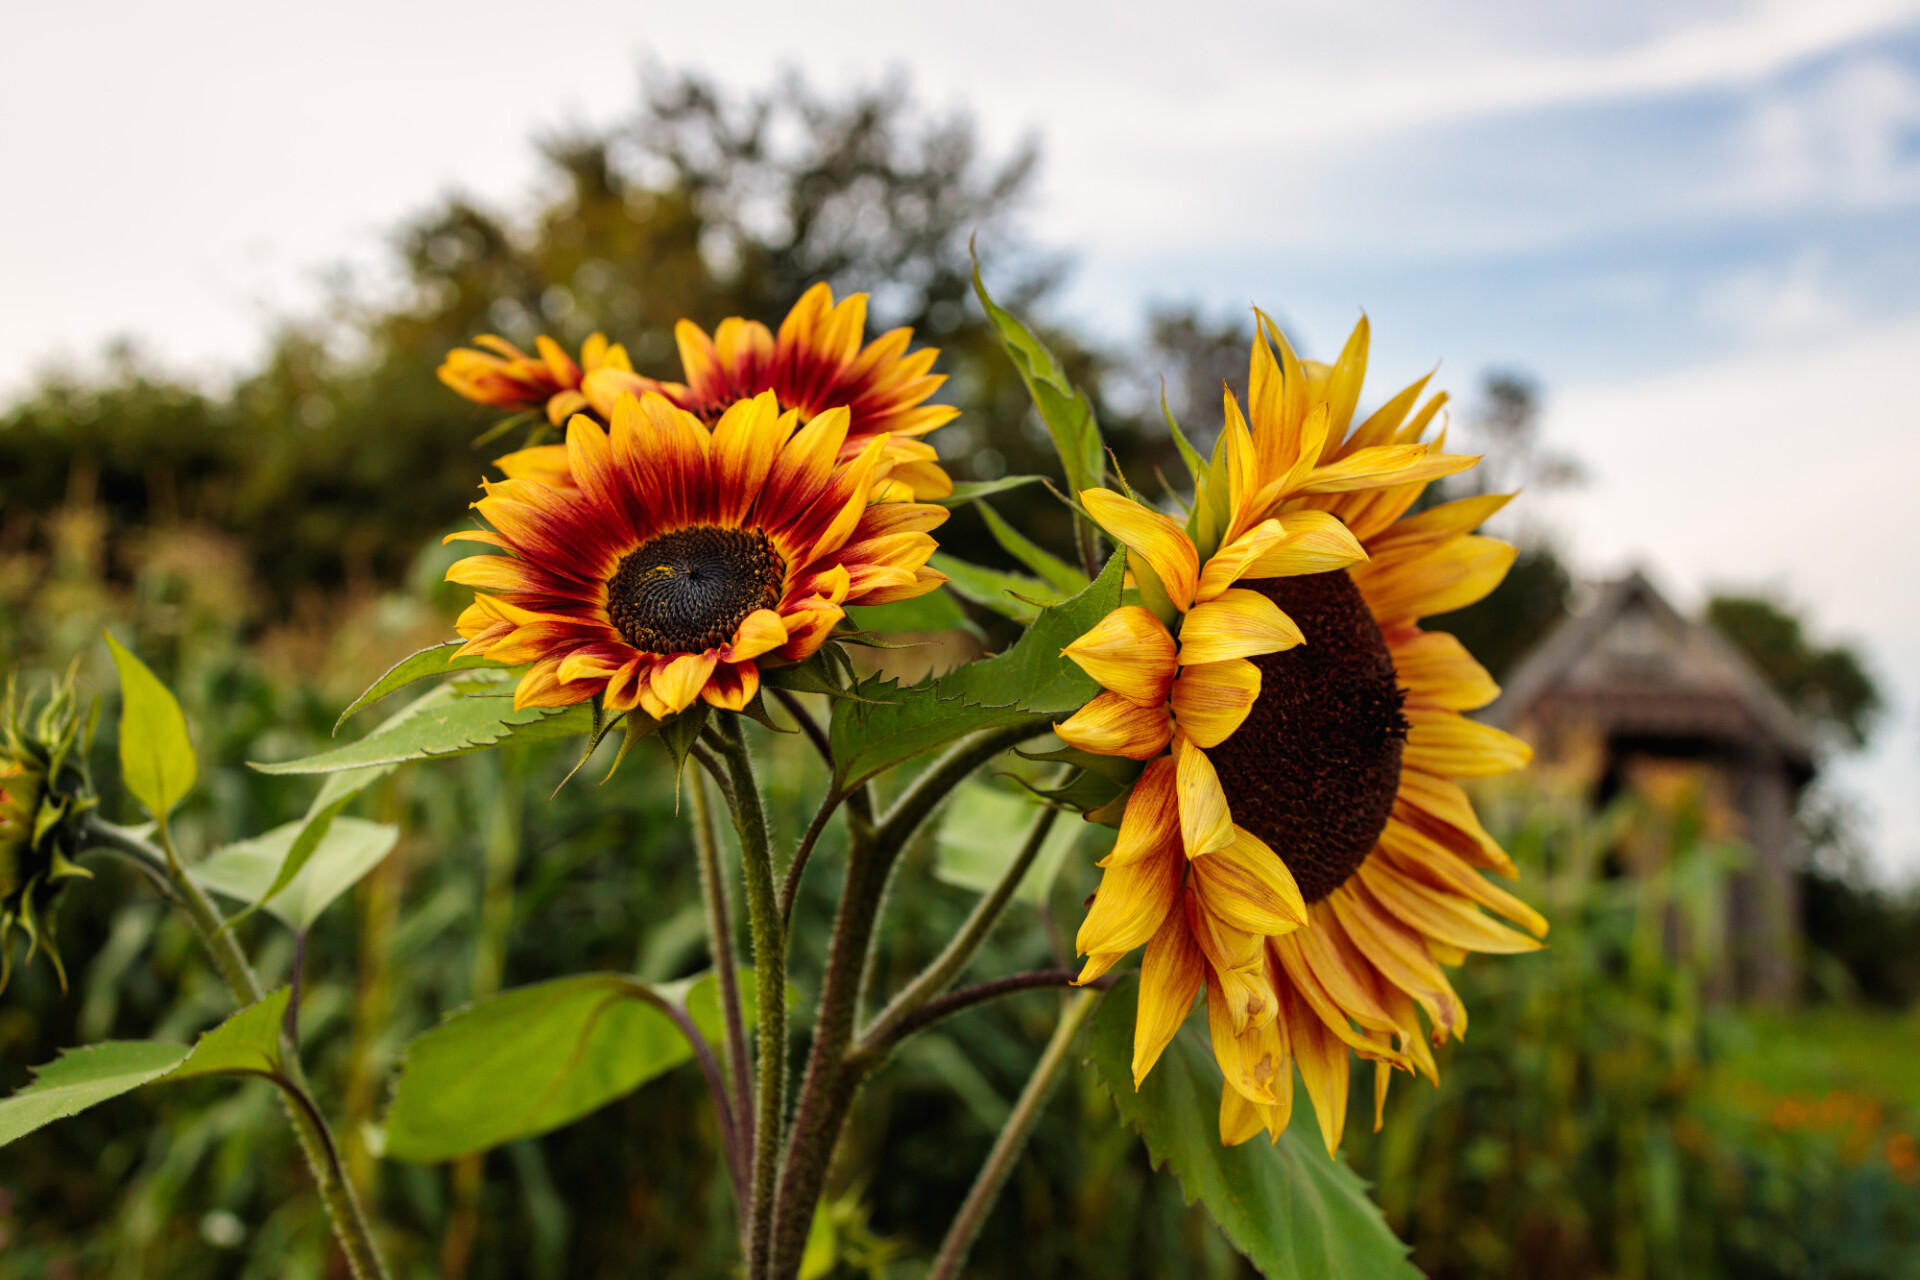 Sunflowers in September